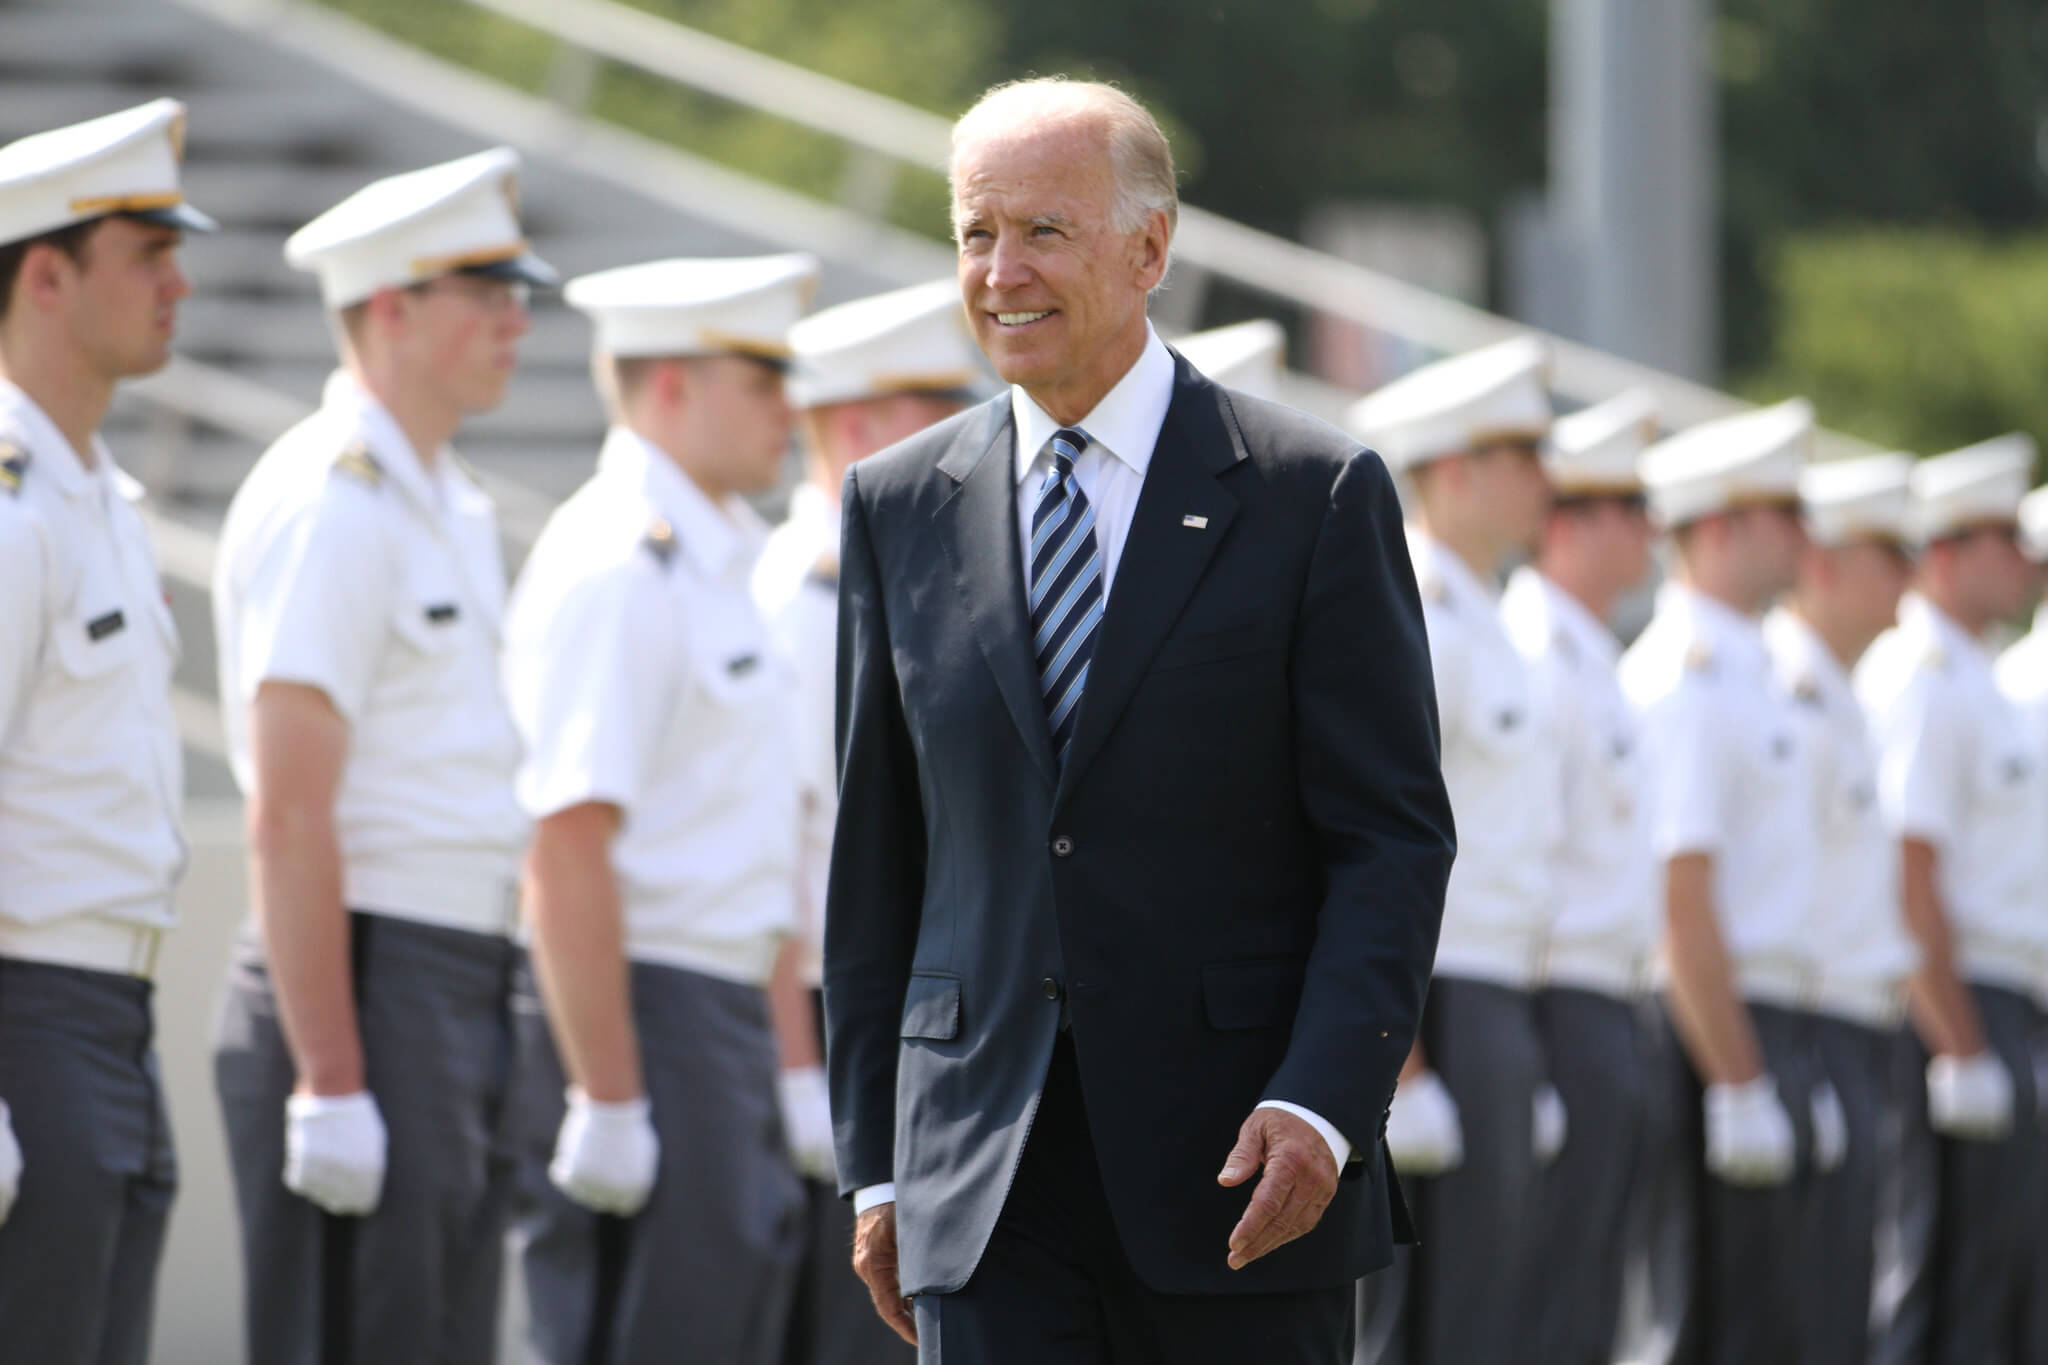 Toenmalig vicepresident van de VS Joe Biden tijdens een militaire afstudeerceremonie in 2012. © West Point / The U.S. Military Academy